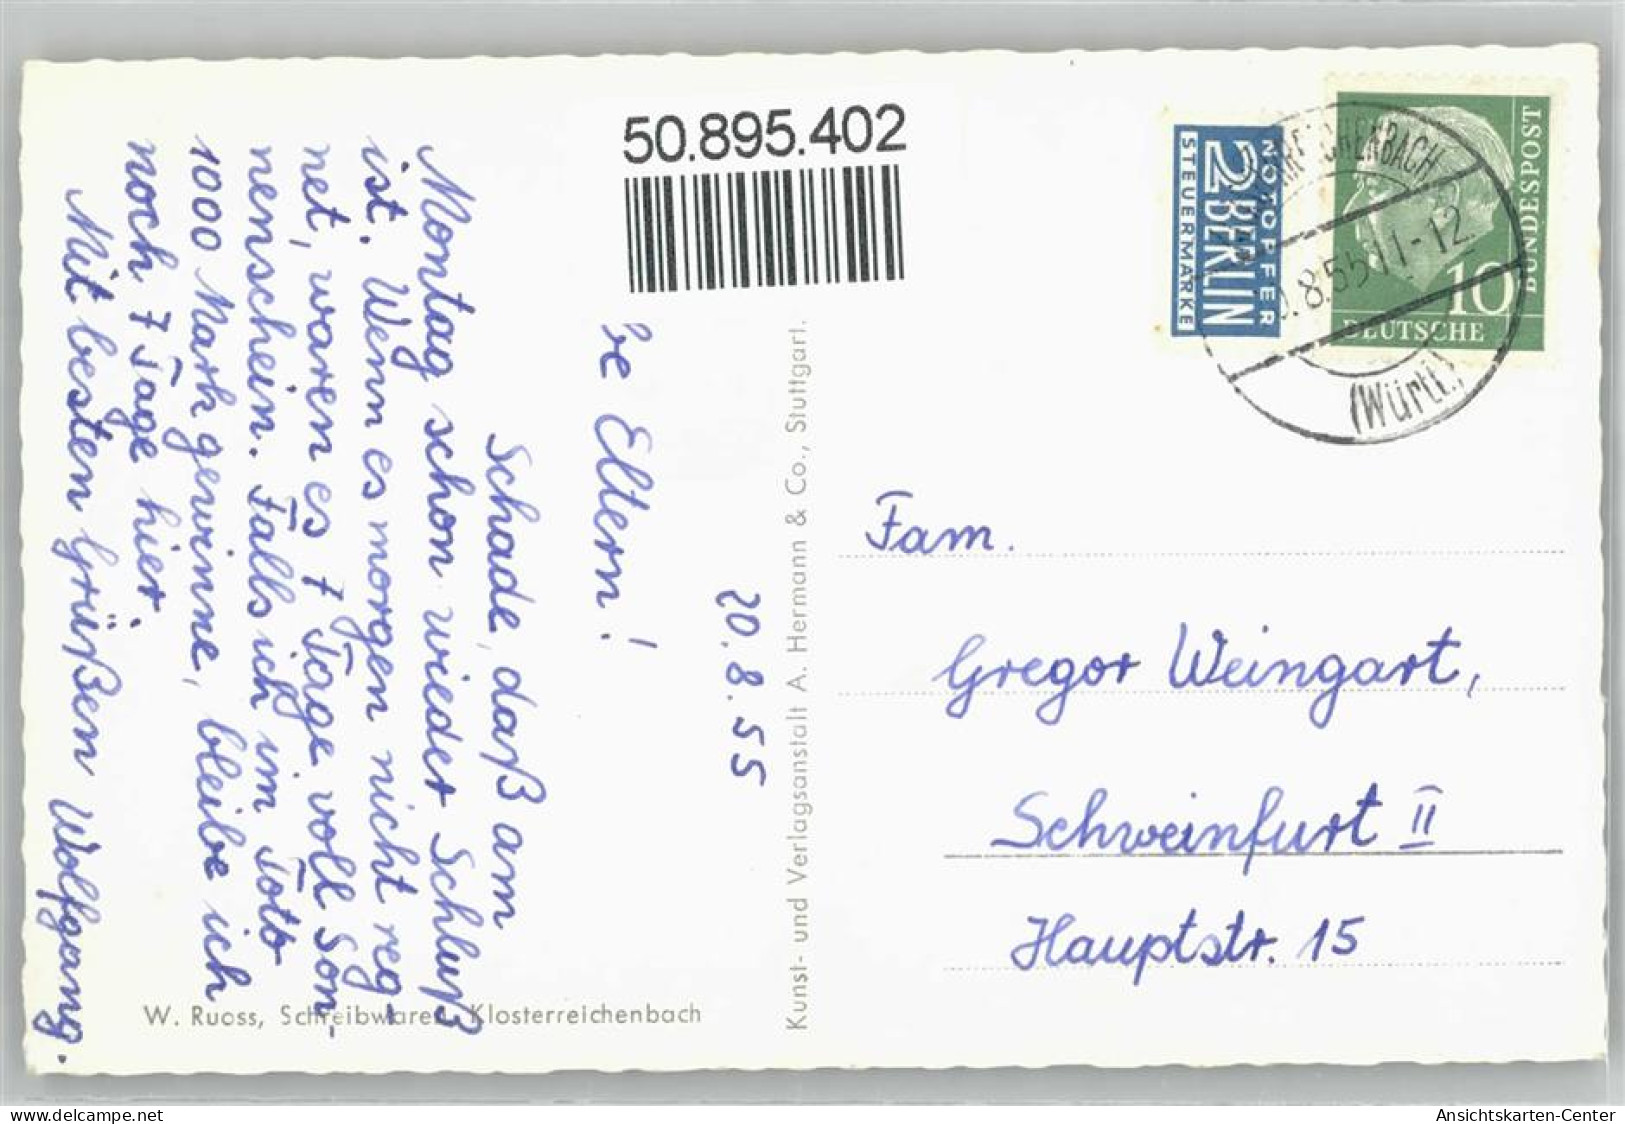 50895402 - Klosterreichenbach - Baiersbronn